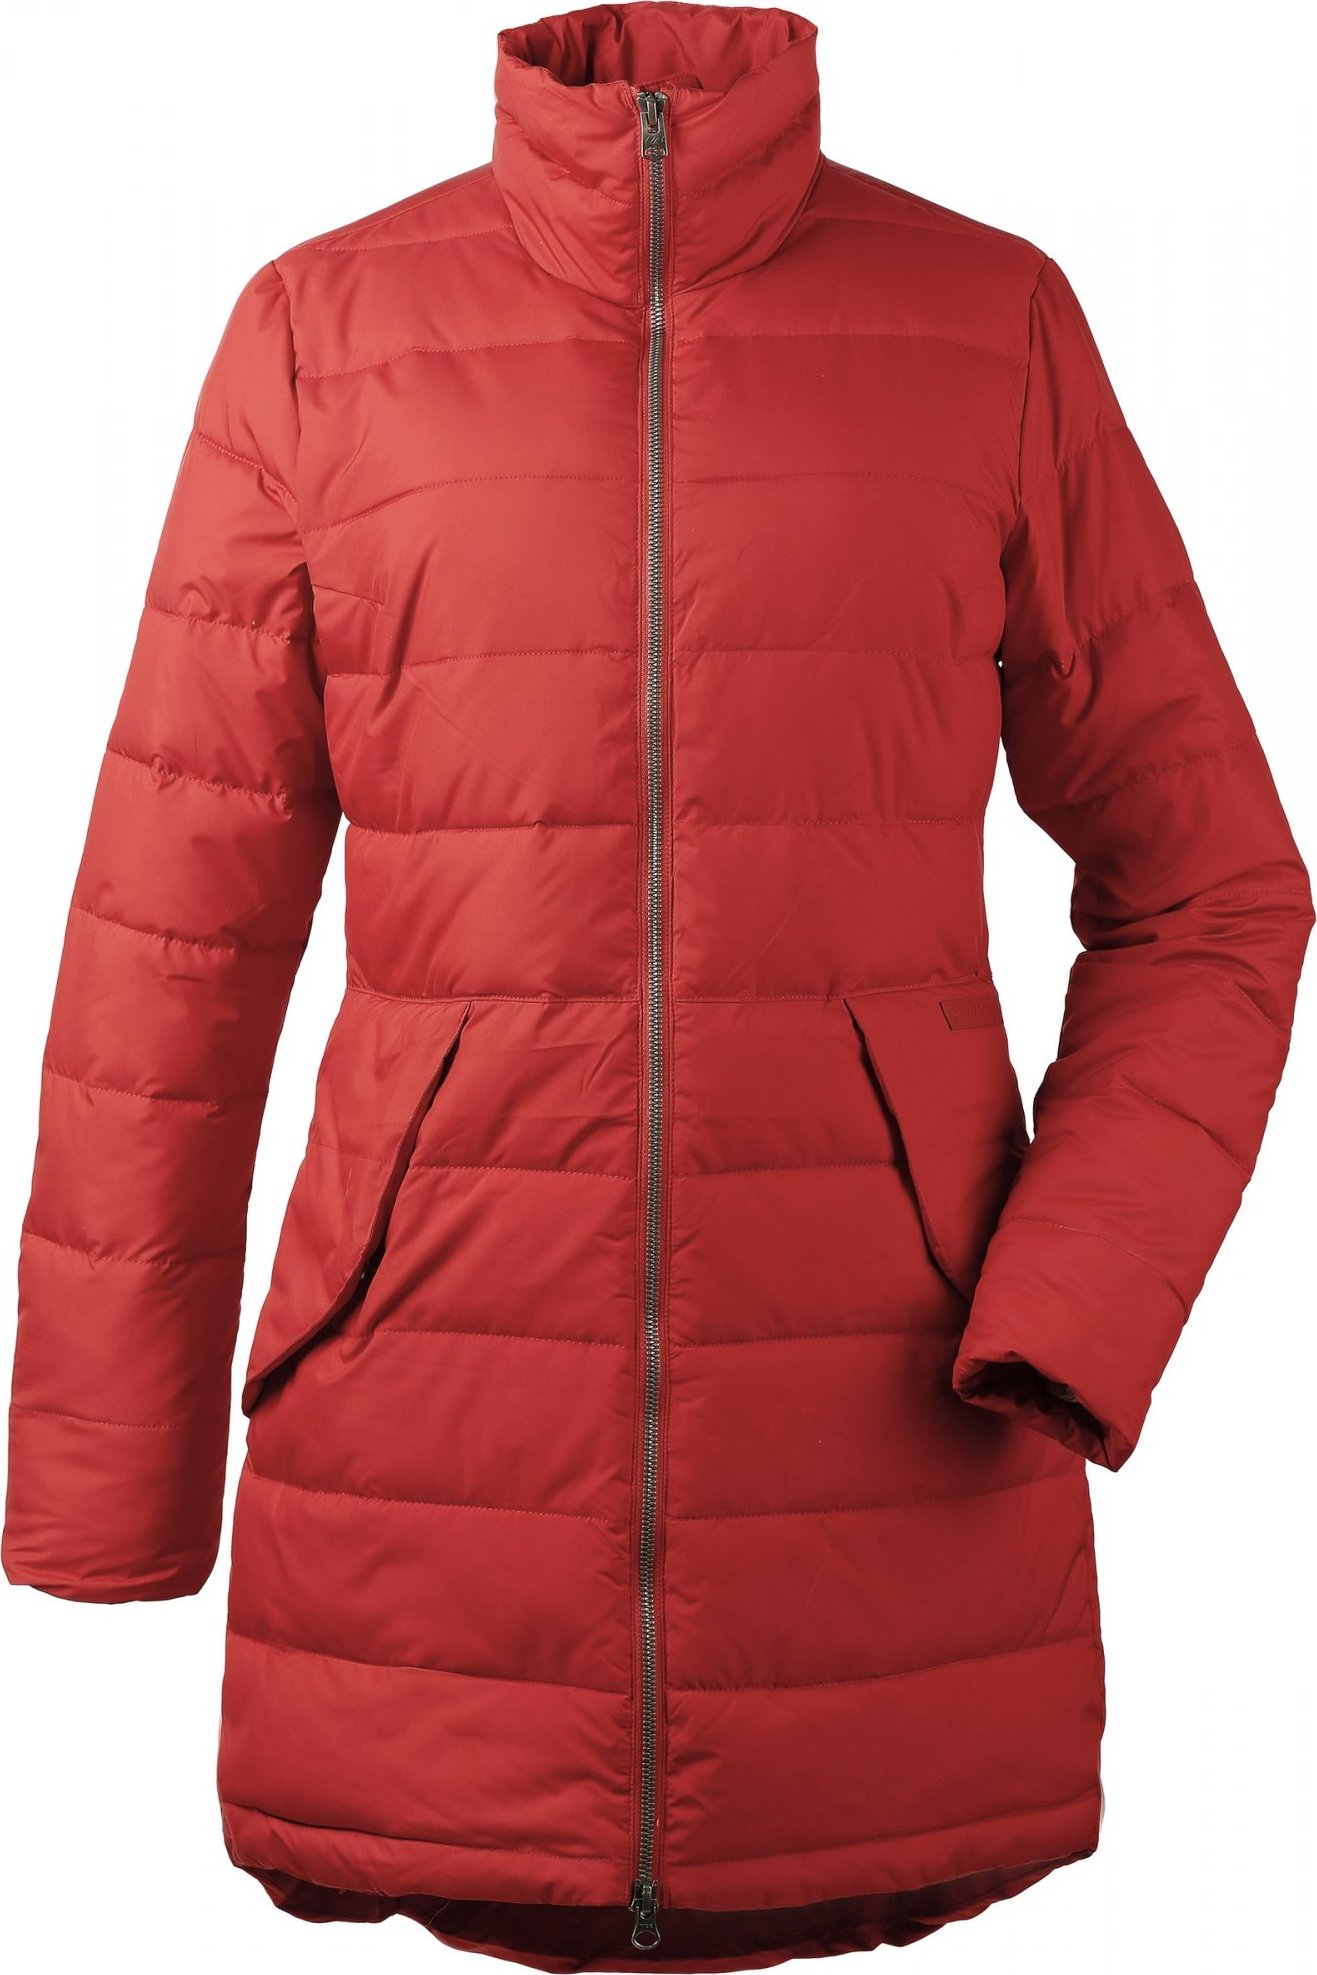 Dámský zimní kabát DIDRIKSONS Hildur oranžový Velikost: 32